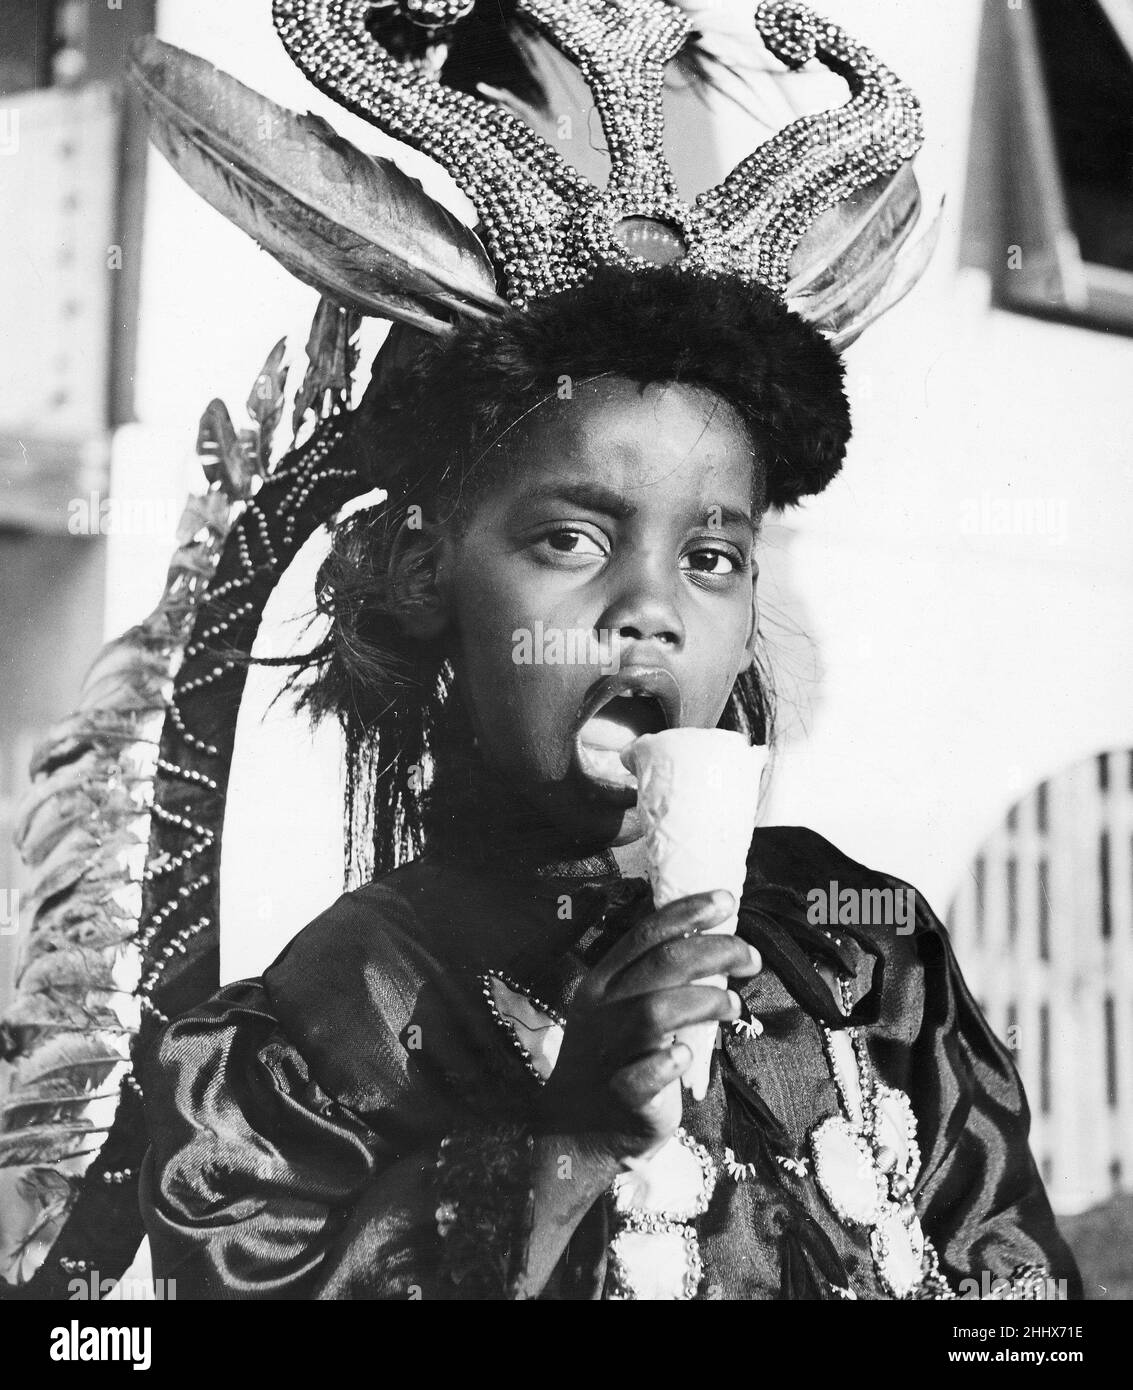 Kinderkarneval im Hafen von Spanien, Trinidad. Eine der einheimischen Kinder, die hier in schickem Kleid gesehen wurde und ihr Eiscornet genoss. Februar 1947 Stockfoto